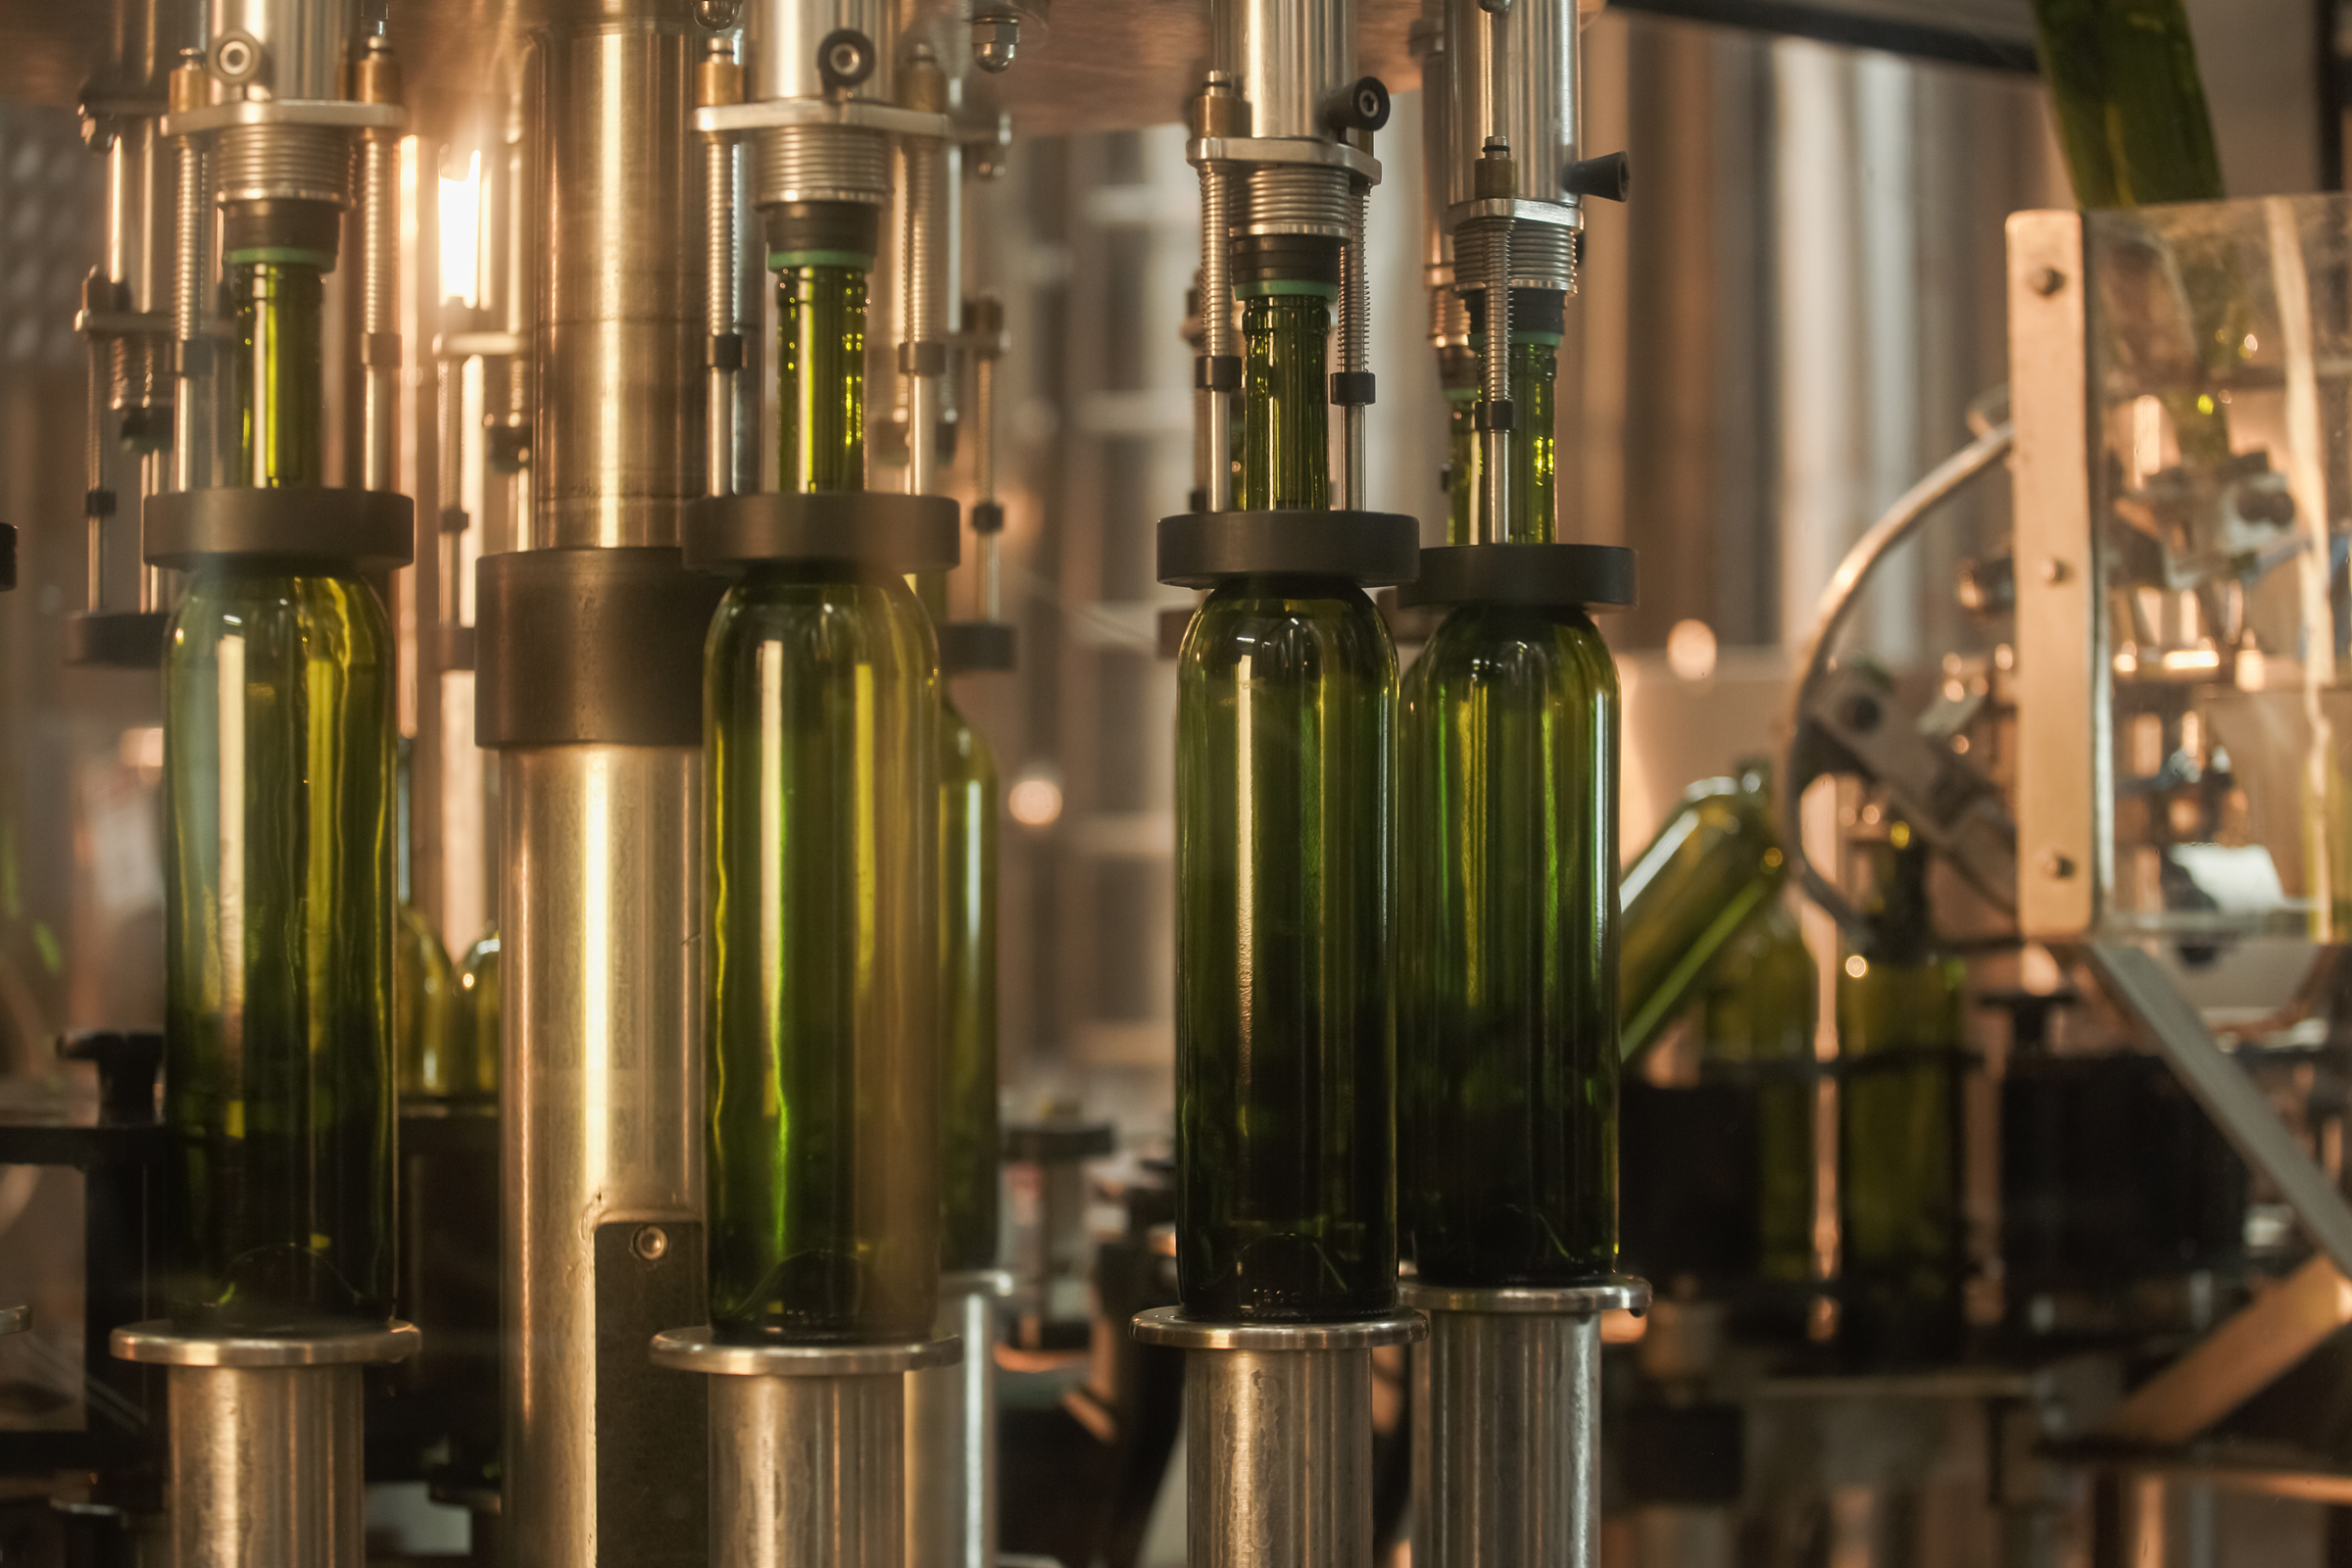 Industrielle Weinabfüllmaschine aus rostfreiem Stahl, mit grünen Weinflaschen.